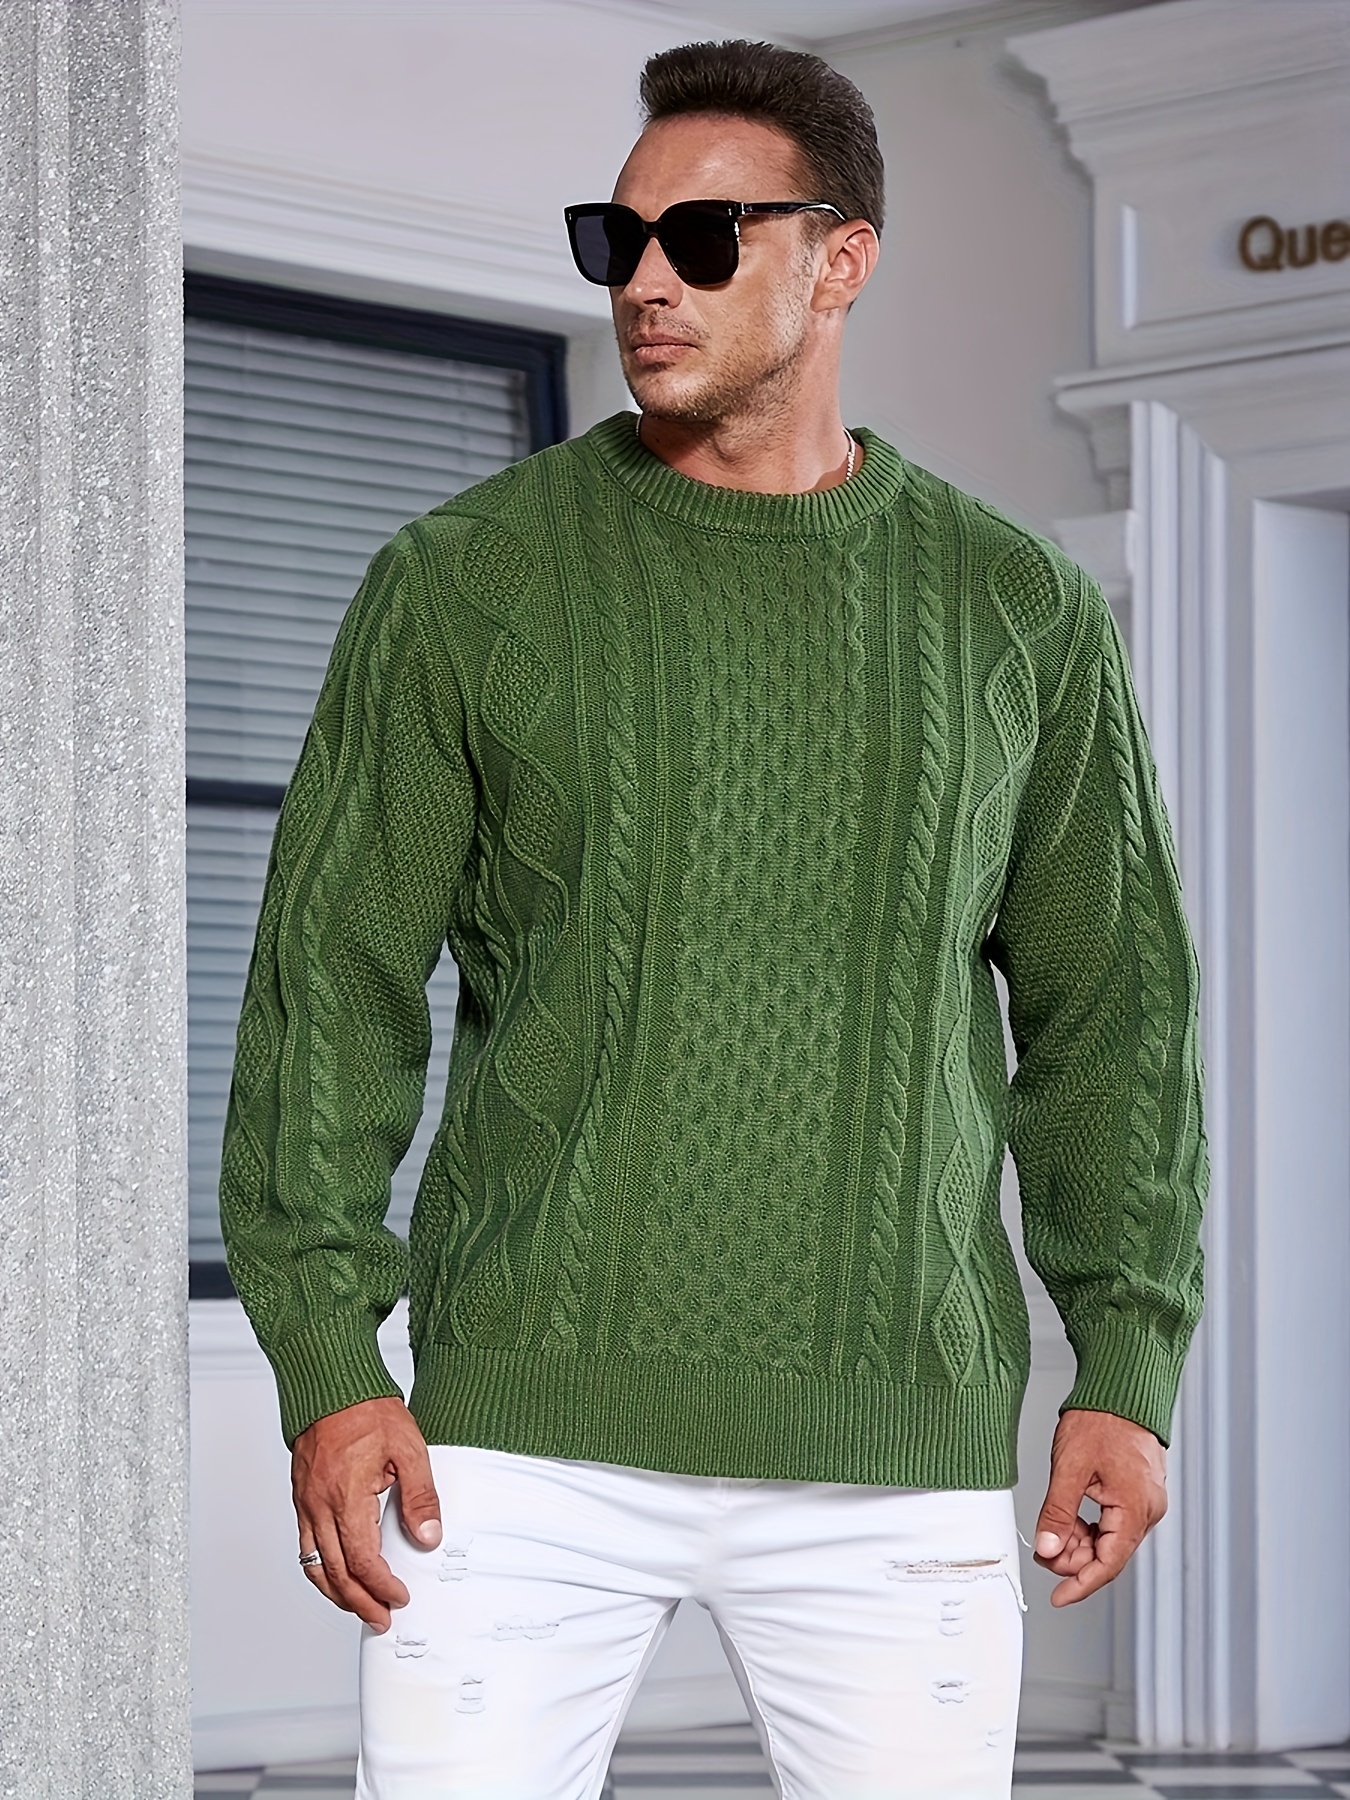 Hammacher Schlemner Men's Original Argyle Sweater Size LARGE